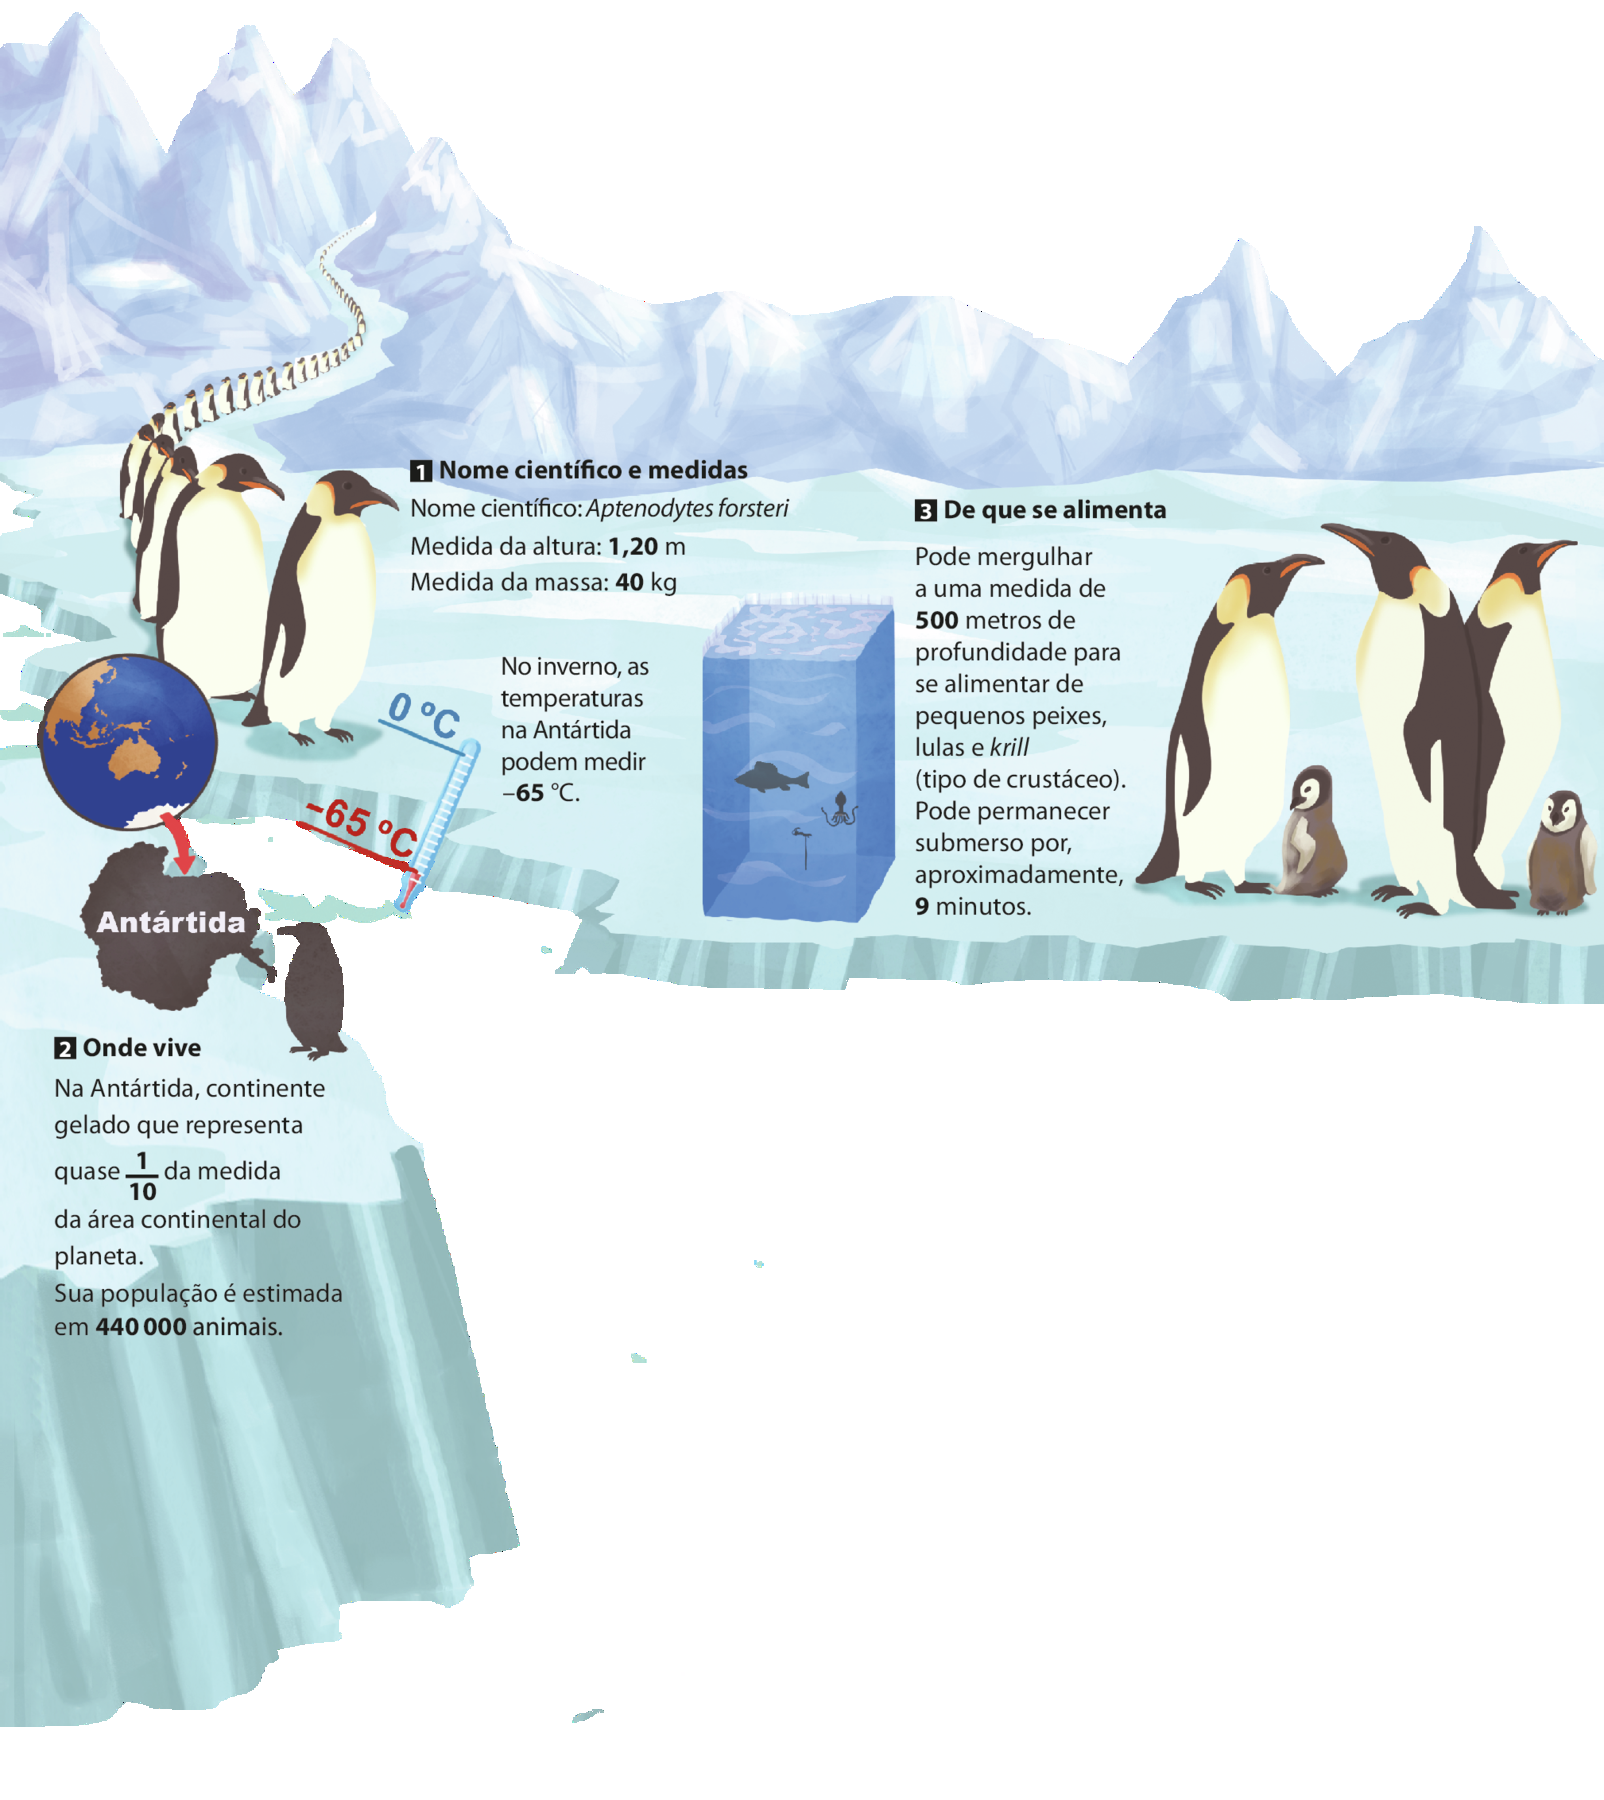 Ilustração. Pinguins. À esquerda, fileira extensa de pinguins entre montanhas de gelo. Destaque para a Antártida no Globo terrestre. Termômetro indicando duas medidas de temperatura diferentes: 0 graus Celsius e menos 65 graus Celsius. Ilustração de bloco retangular de água com alguns peixes, uma lula e um krill (tipo de crustáceo) Diferentes informações sobre os pinguins da ilustração numeradas de 1 a 3. 1. Nome científico e medidas. Nome científico: Aptenodytes forsteri Medida da altura: Medida da massa: 40 kg. 2. Onde vive. Na Antártida, continente gelado que representa quase 1 décimo da medida da área continental do planeta. Sua população é estimada em 440.000 animais. 3. De que se alimenta. Pode mergulhar a uma medida de 500 metros de profundidade para se alimentar de pequenos peixes, lulas e krill (tipo de crustáceo). Pode permanecer submerso por, aproximadamente, 9 minutos. No canto direito da ilustração há 3 pinguins adultos e dois pinguins filhotes.